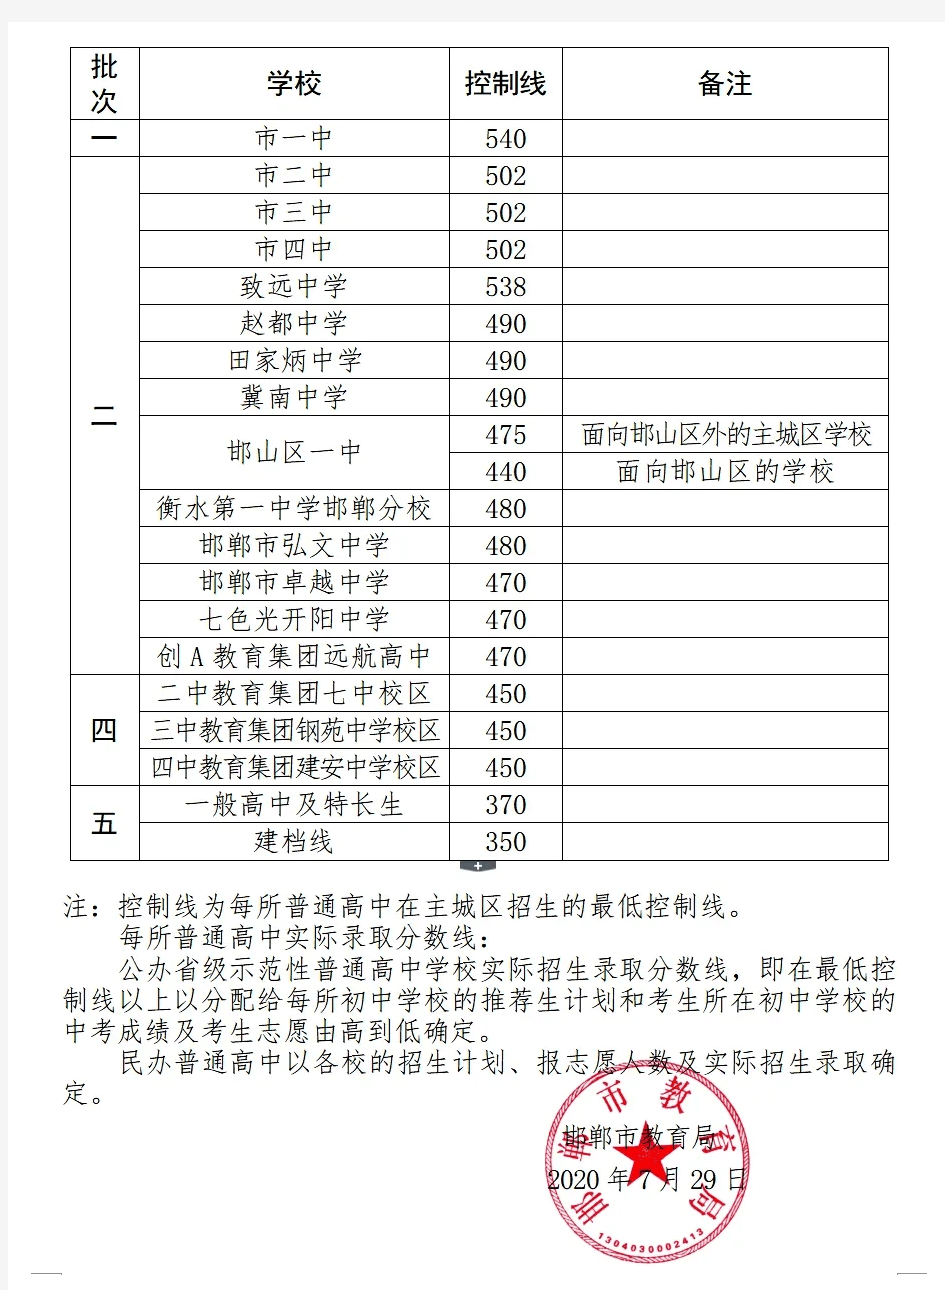 2020邯郸市中考各高中录取分数线